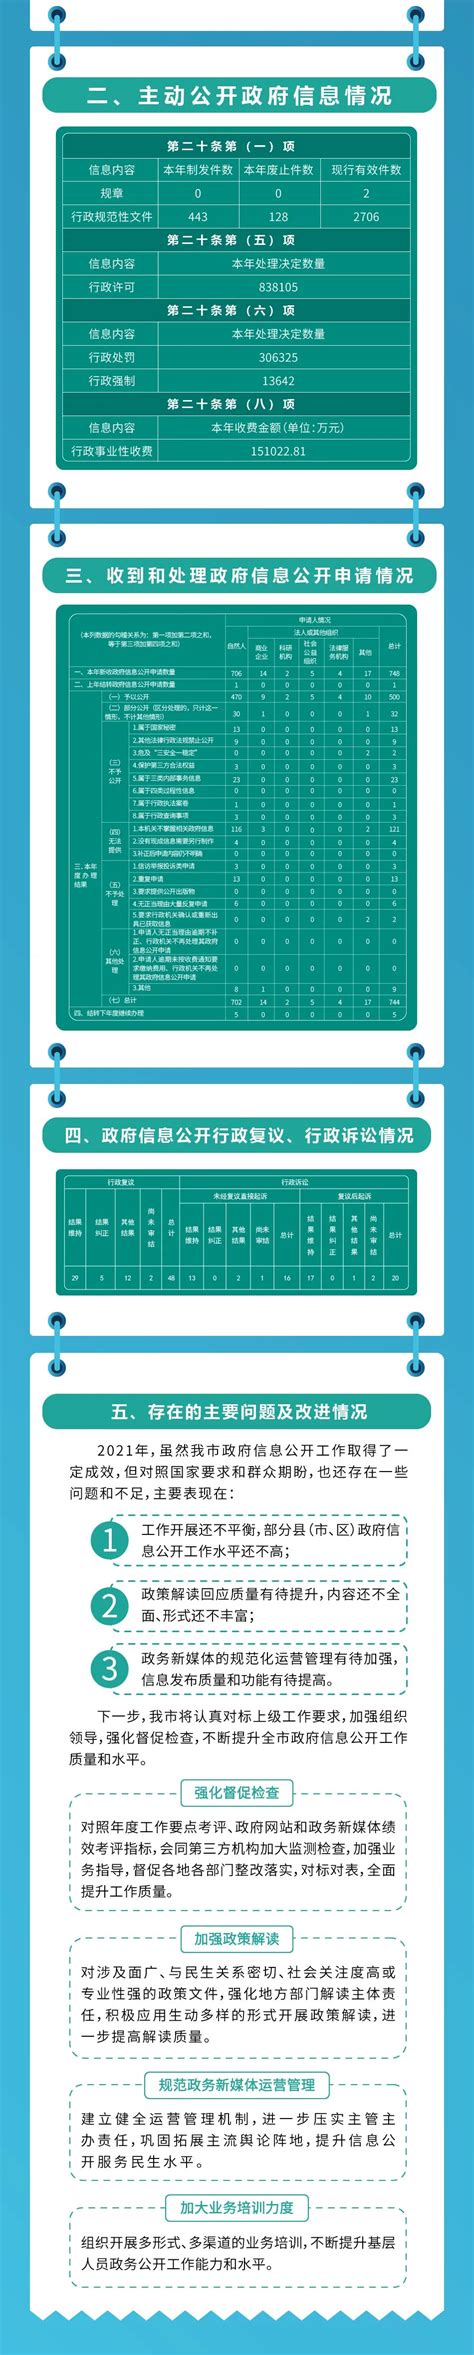 赣州市南康区人民政府2021年政府信息公开工作年度报告（图文版） | 南康区信息公开